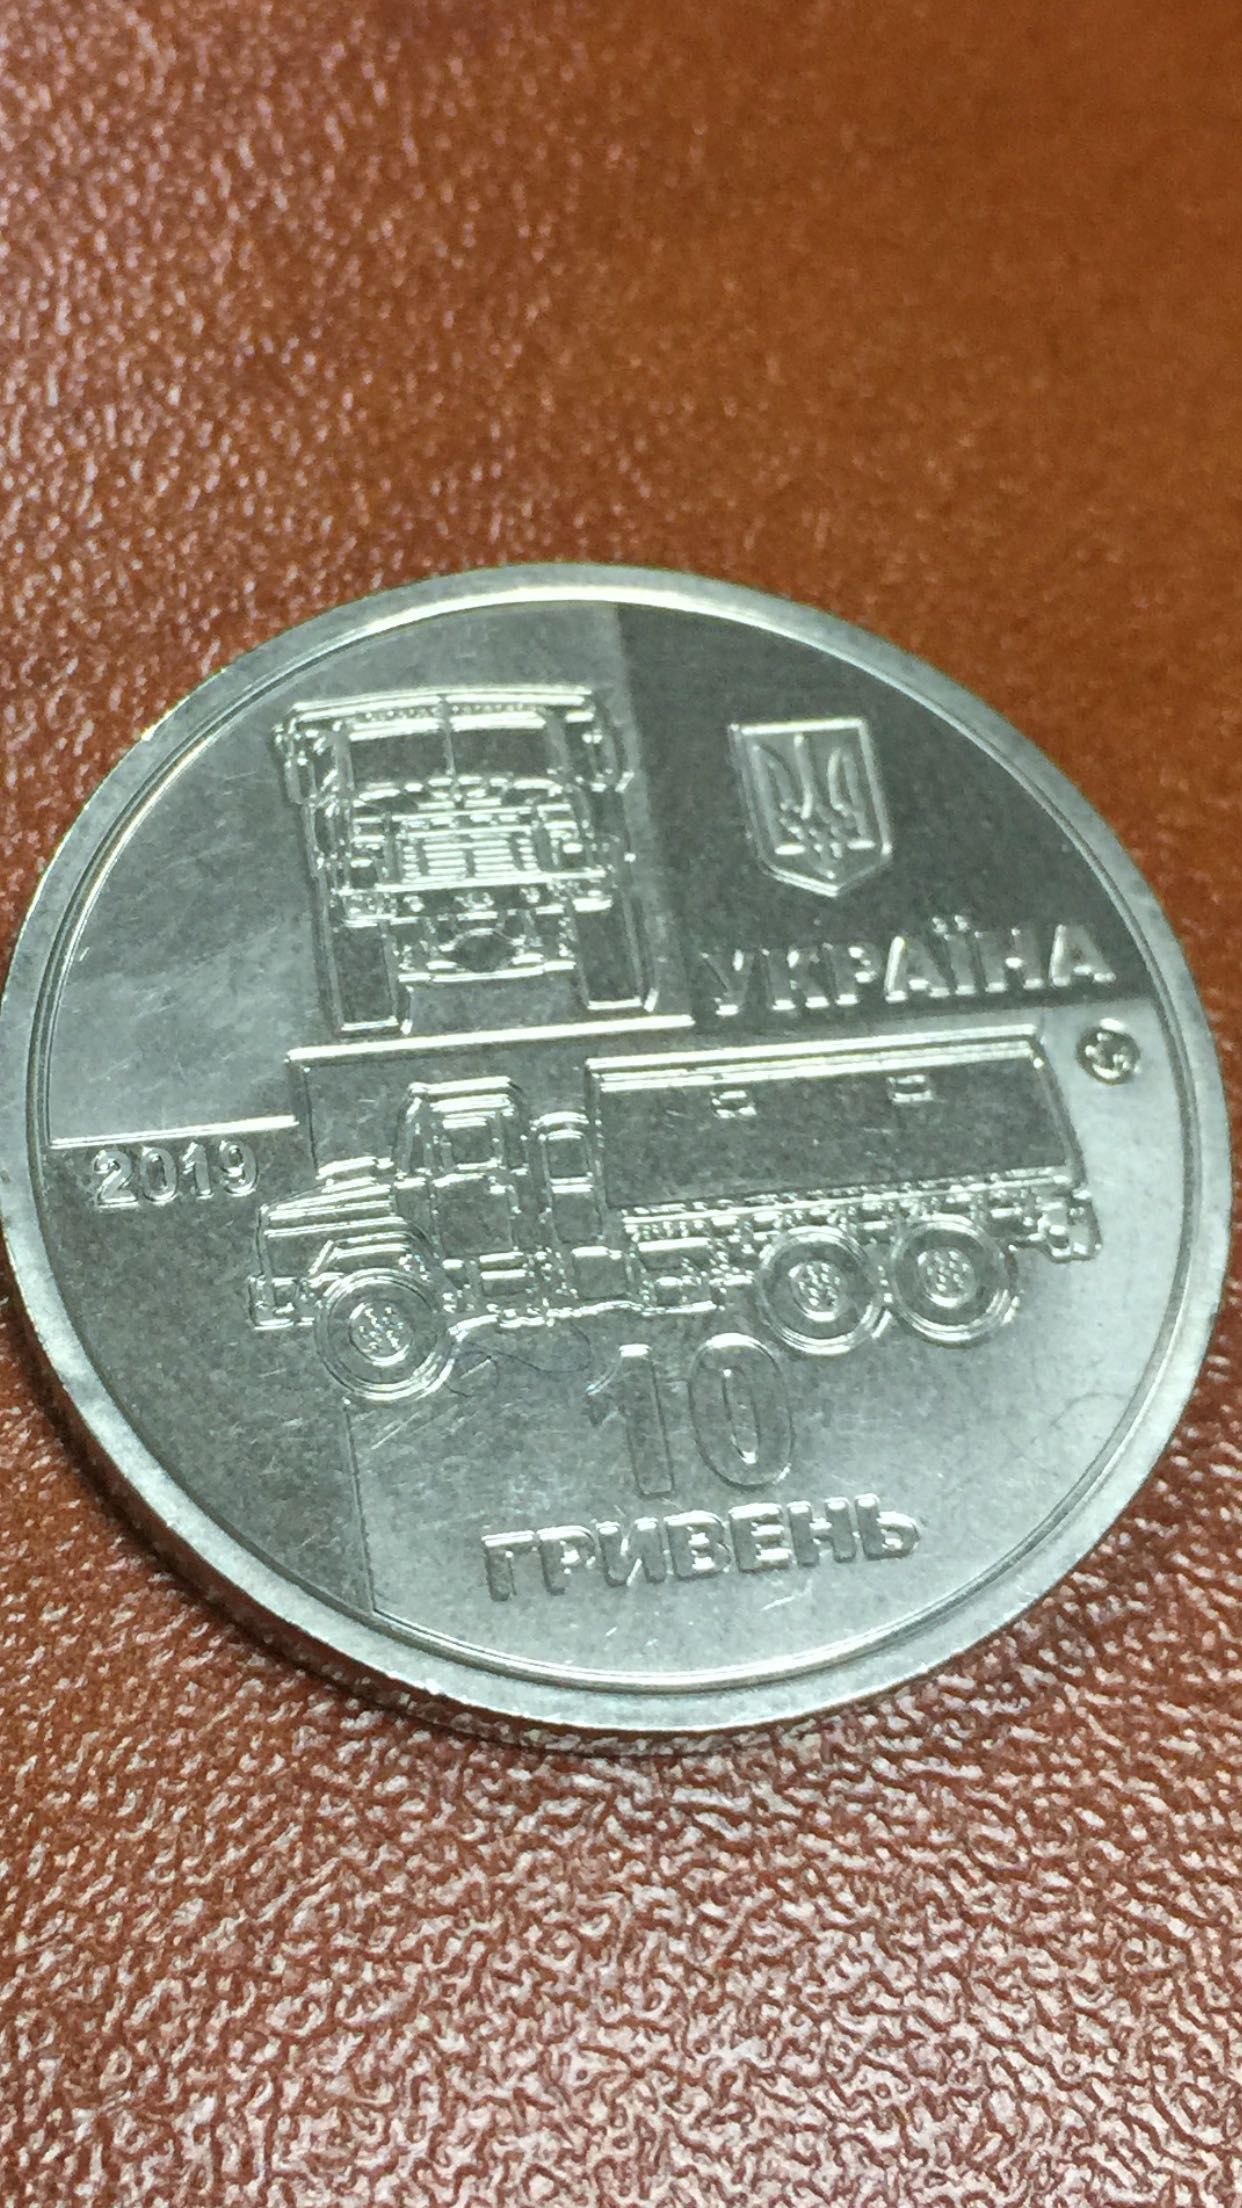 Юбилейная монета большая 10 гривен 2019 года Украина